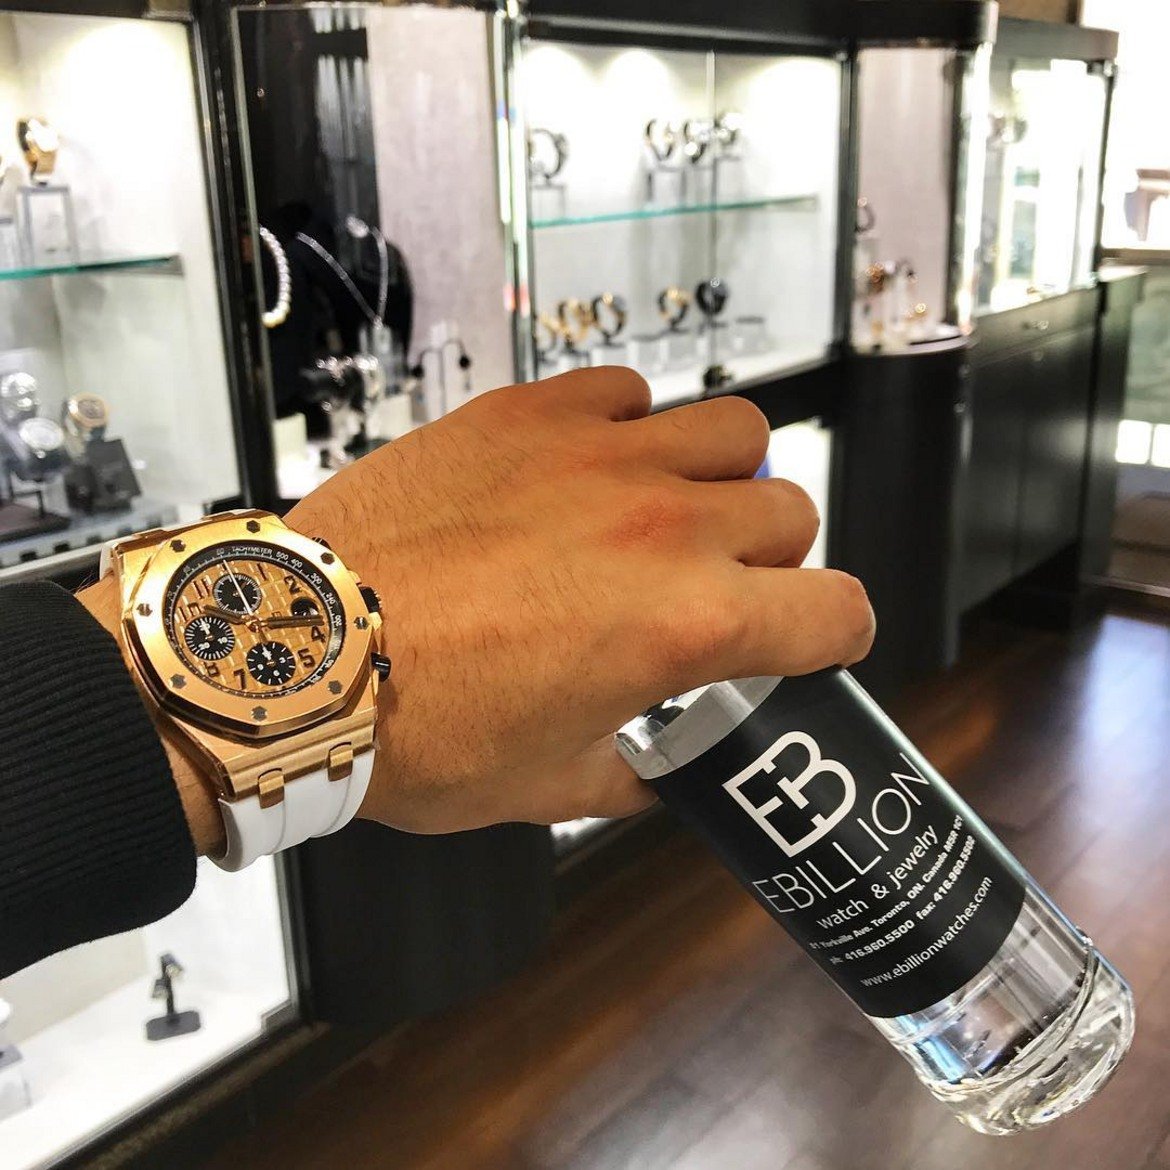 Шопингът на луксозни стоки като този часовник също е на мода сред богати деца на Instagram, както става ясно от профила на бизнесмена Марк Маргулийс от Маями.